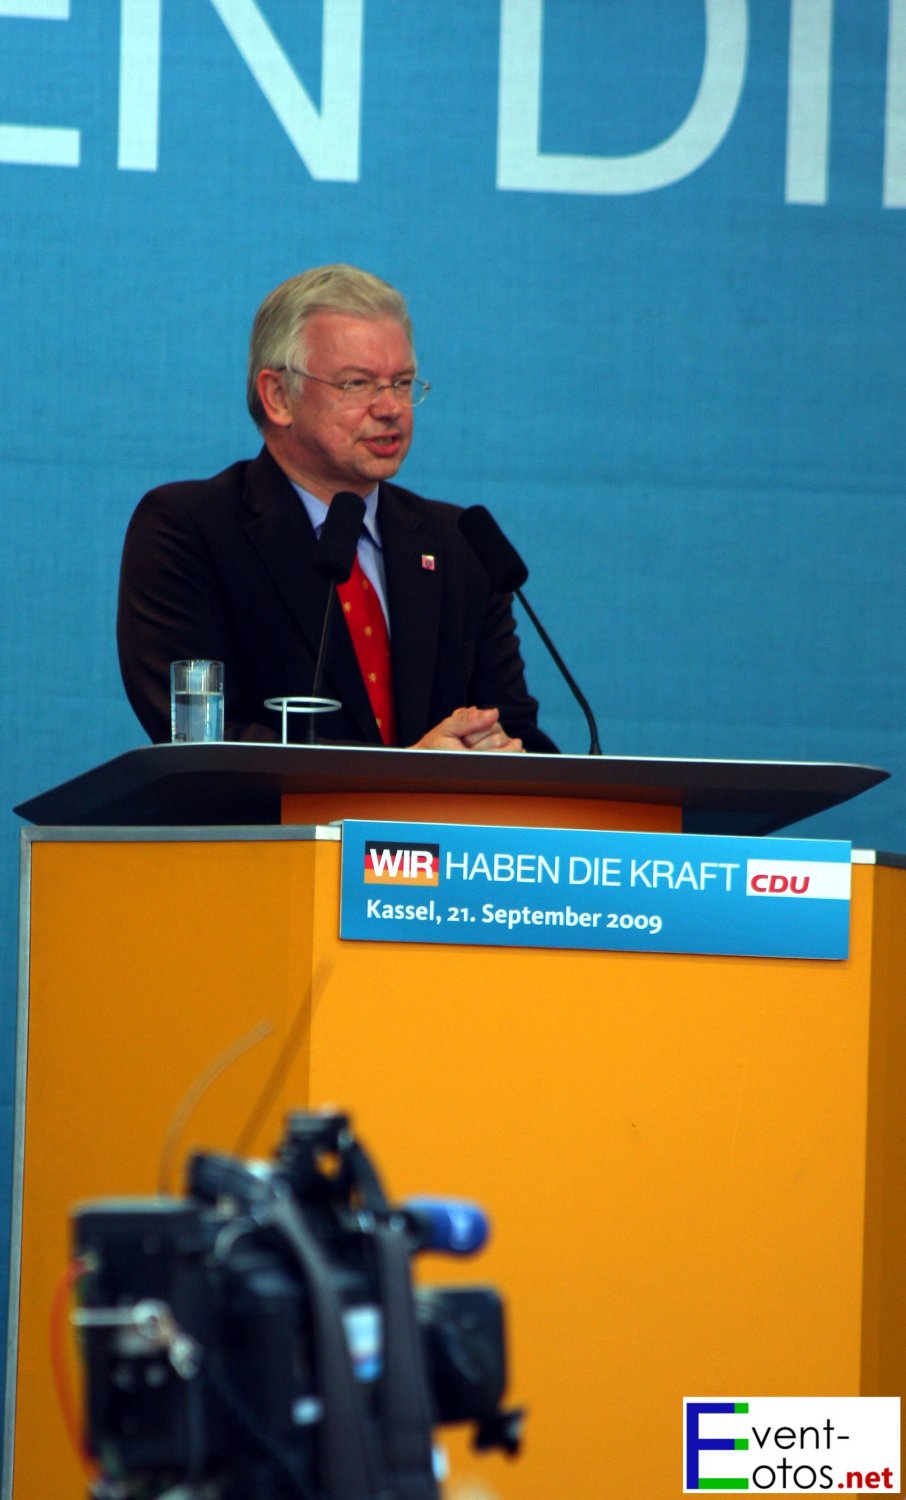 Roland Koch (CDU)
